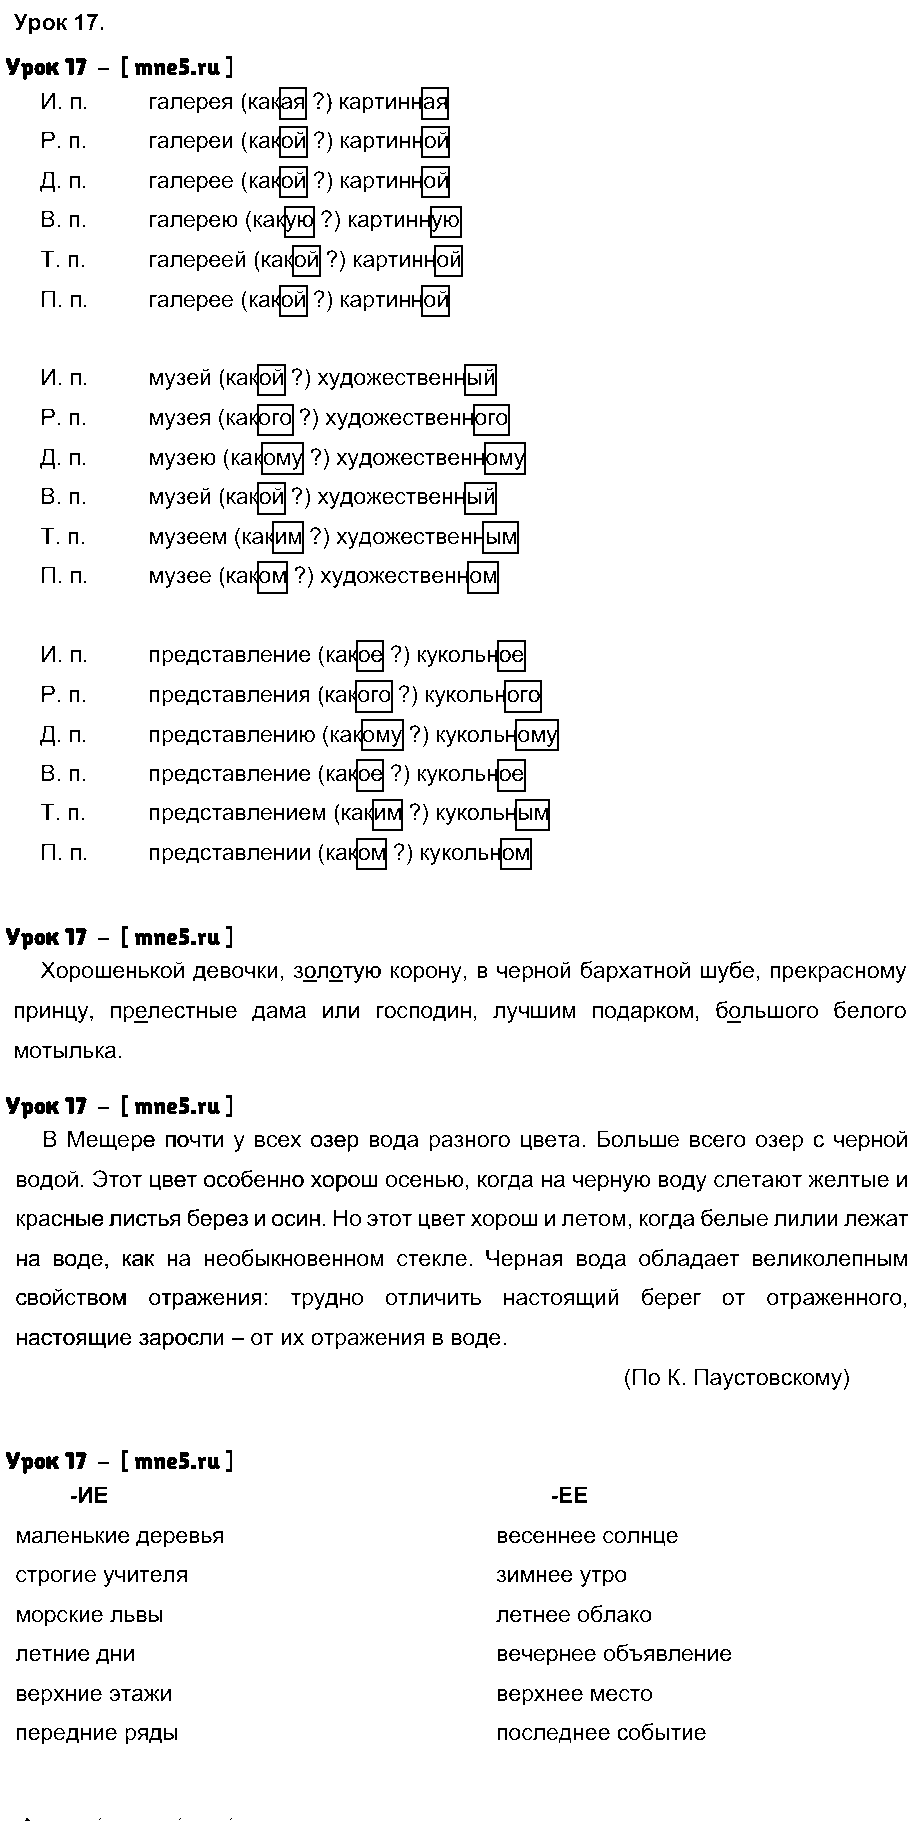 ГДЗ Русский язык 4 класс - Урок 17